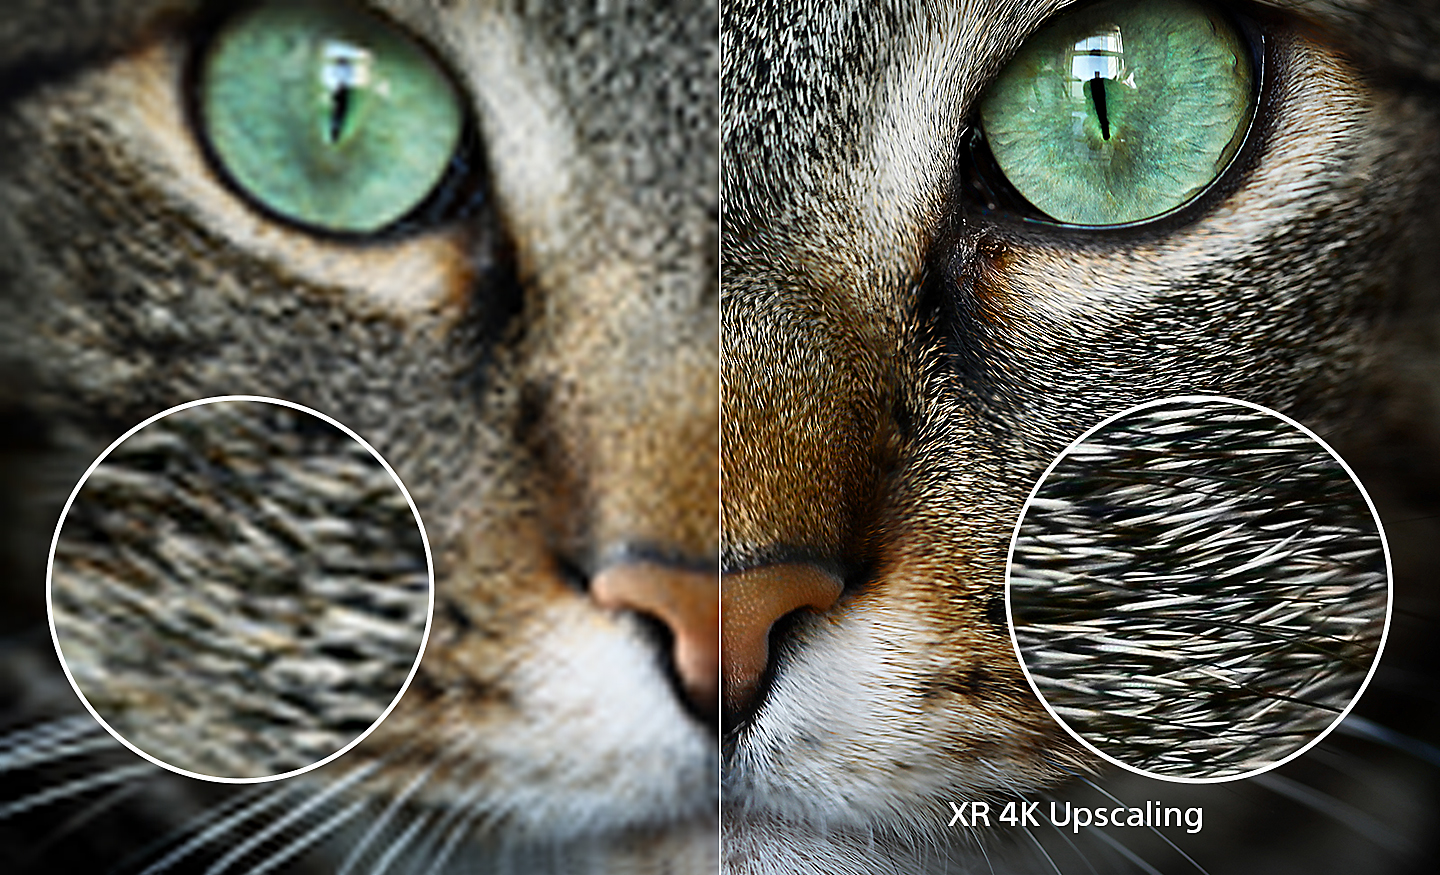 Pembagian layar kepala kucing; sisi kanan memperlihatkan detail ekstra setelah XR 4K Upscaling